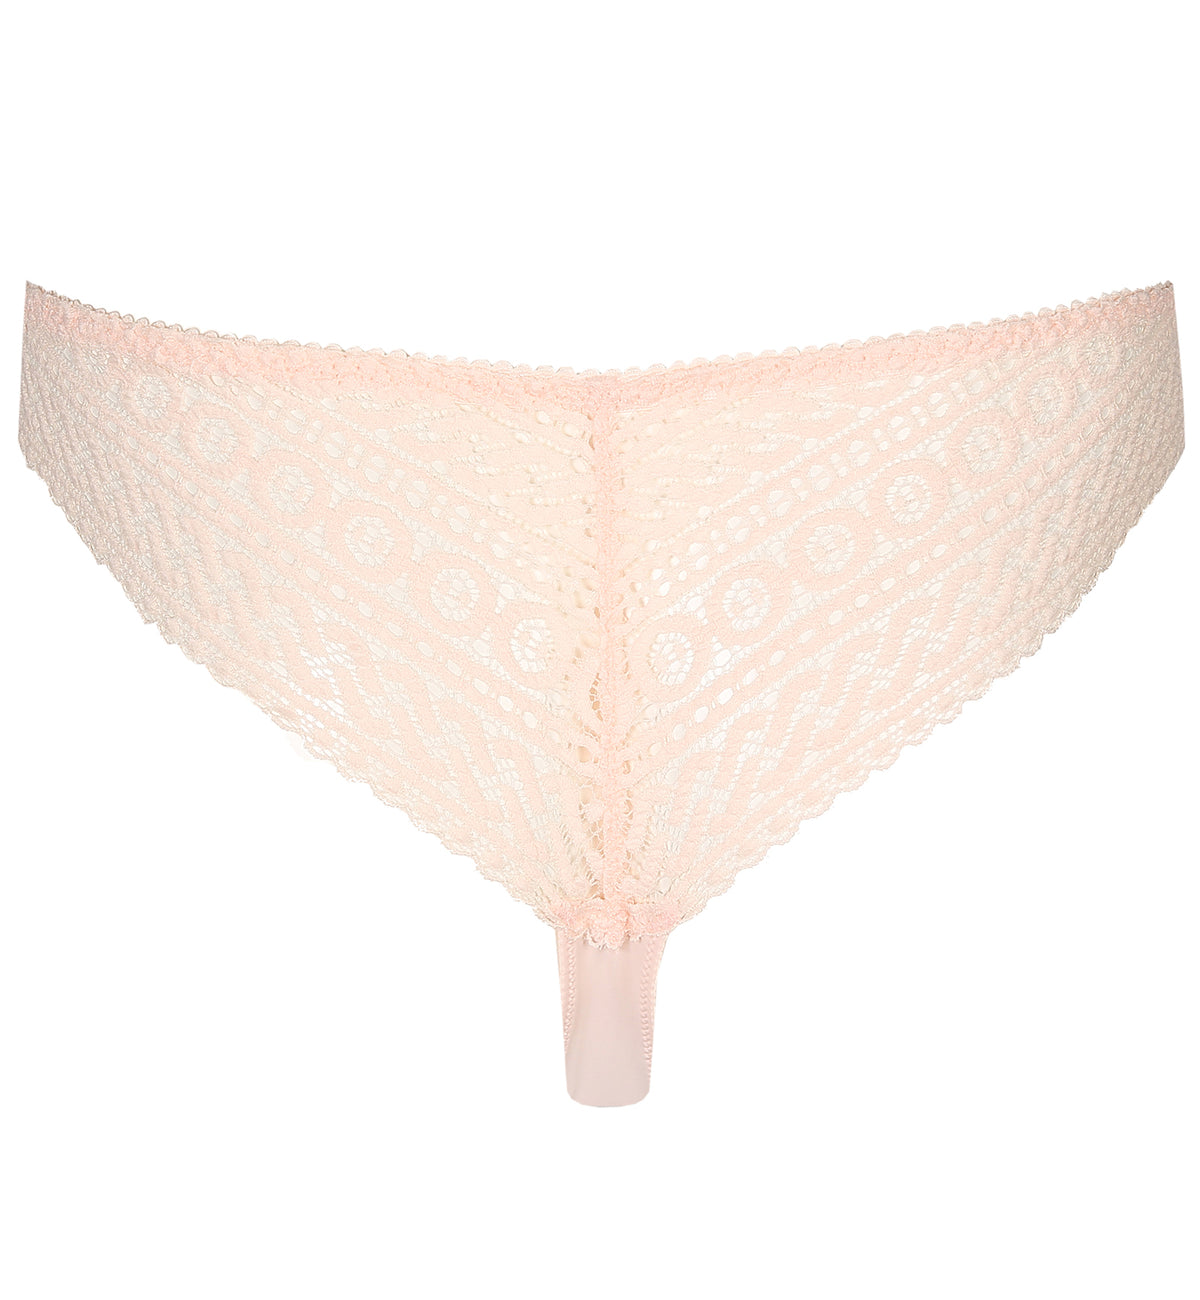 PrimaDonna Montara Matching Thong (0663380),Small,Crystal Pink - Crystal Pink,Small